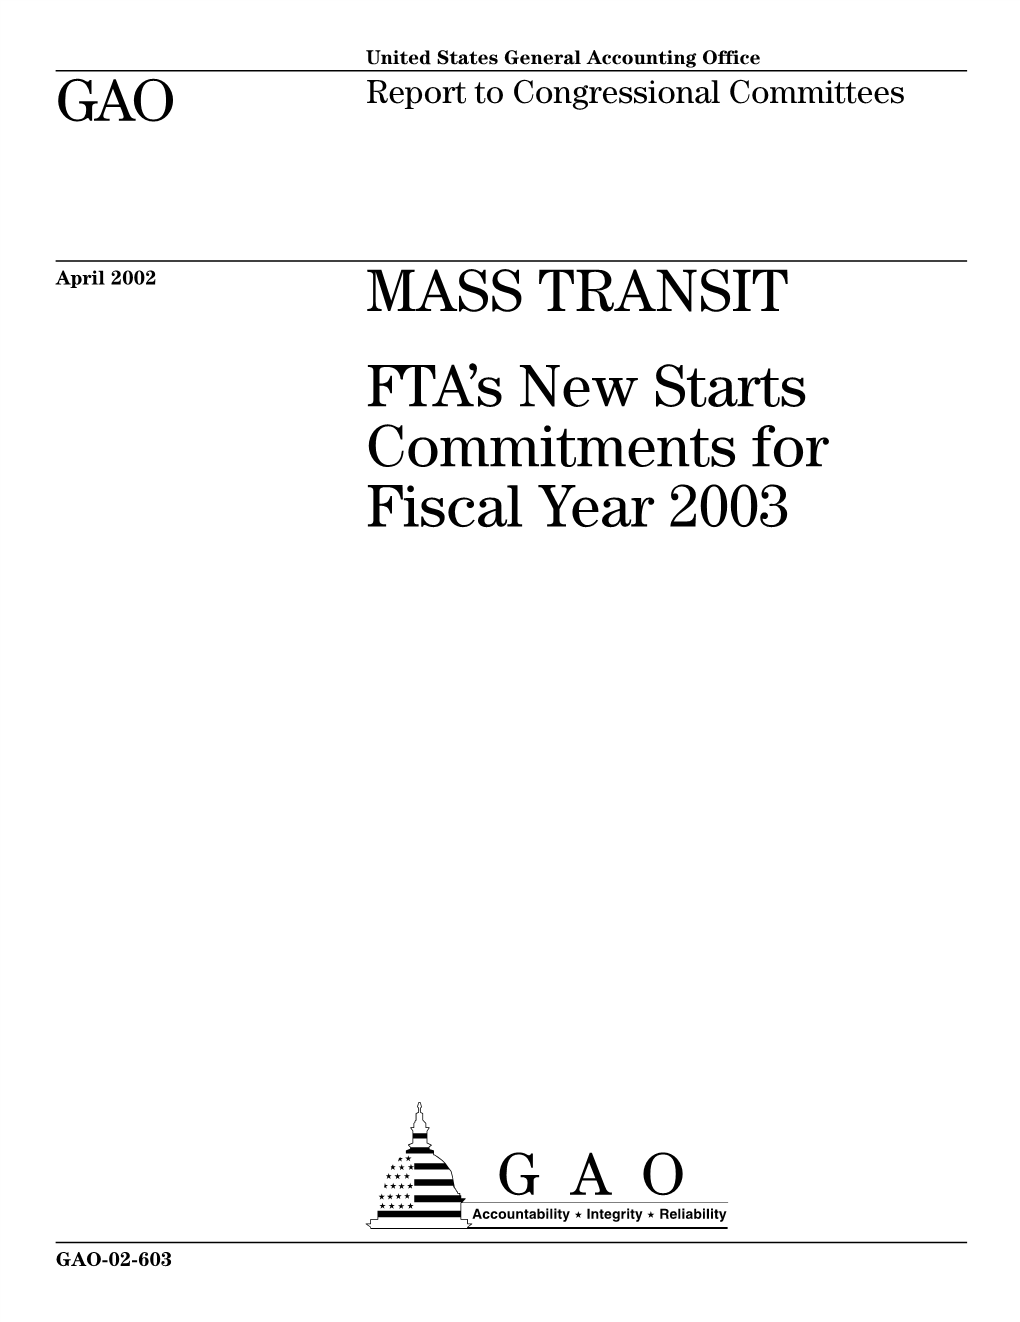 GAO-02-603 Mass Transit Contents